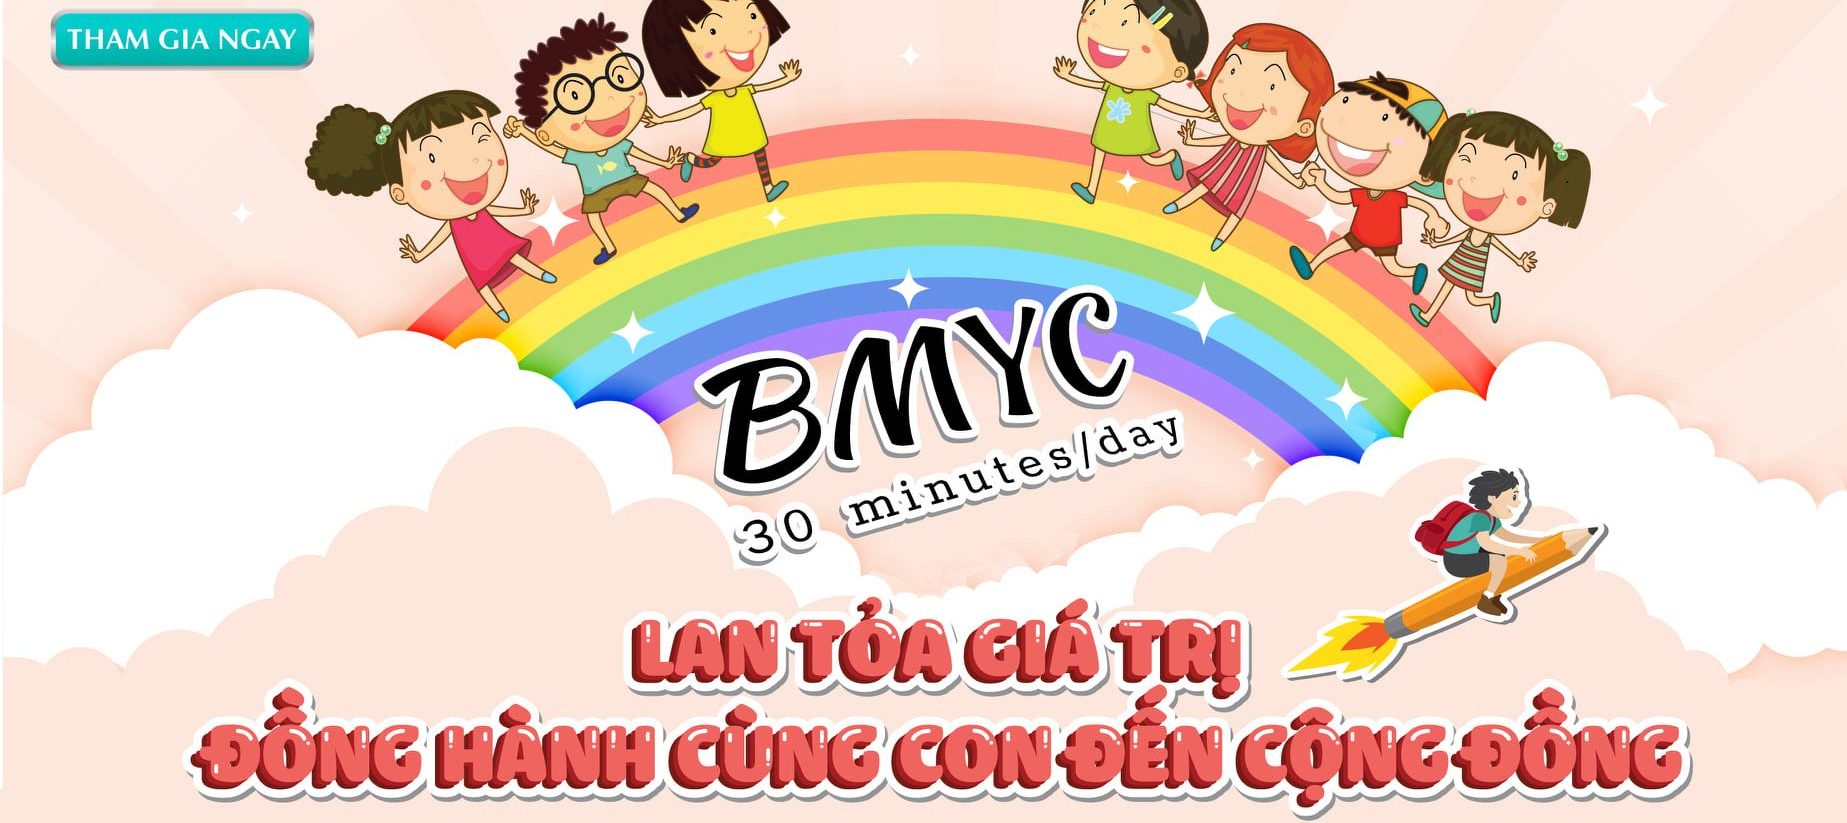 BMyC - Học tiếng Anh song ngữ - Bé tự học tiếng Anh tại nhà